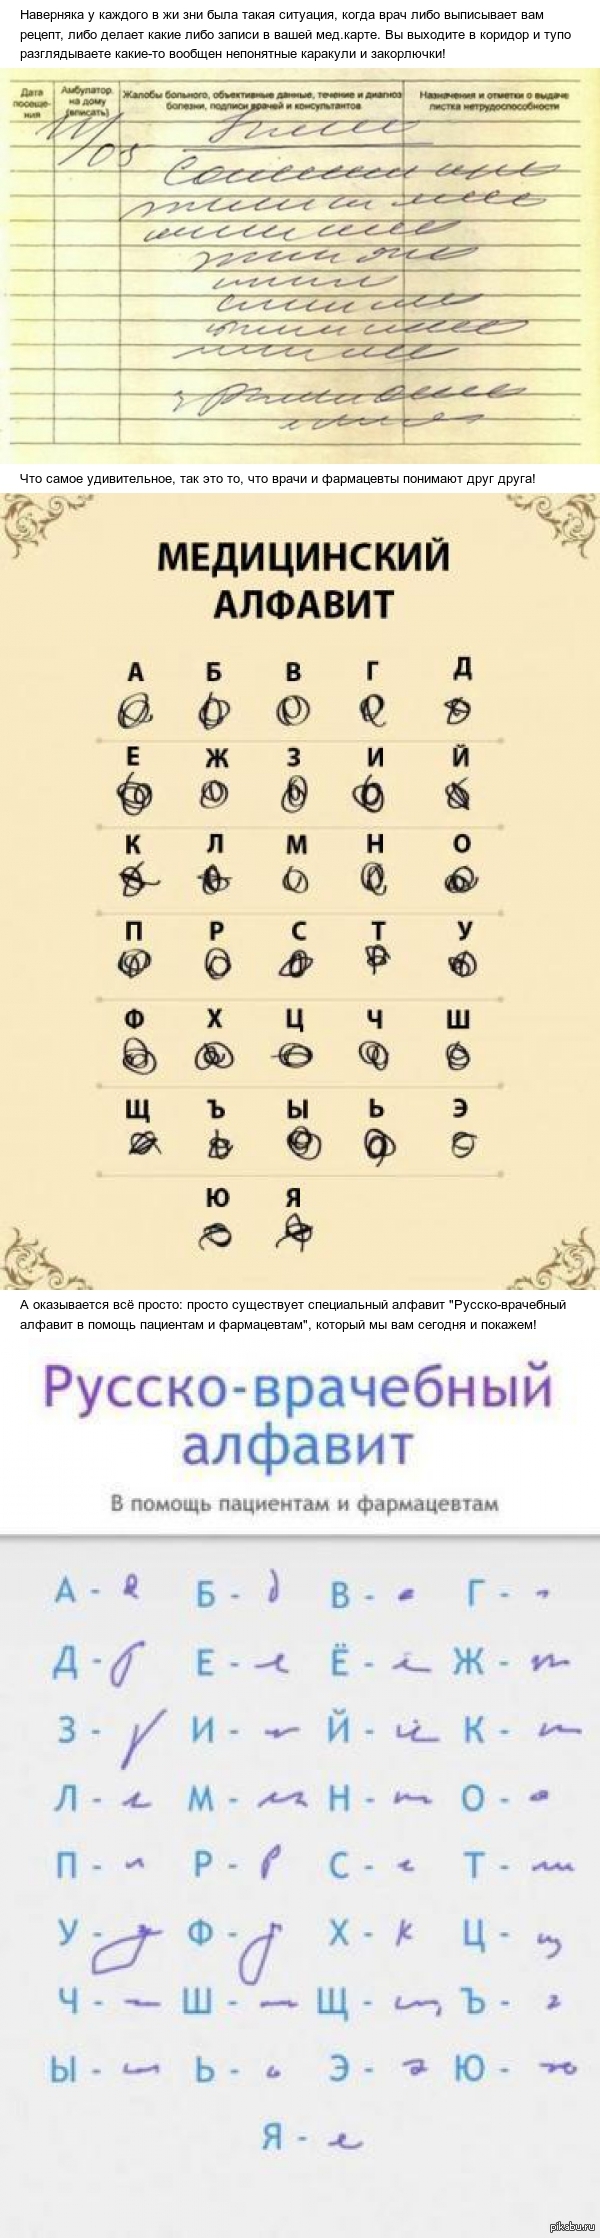 Руско врачебный алфавит